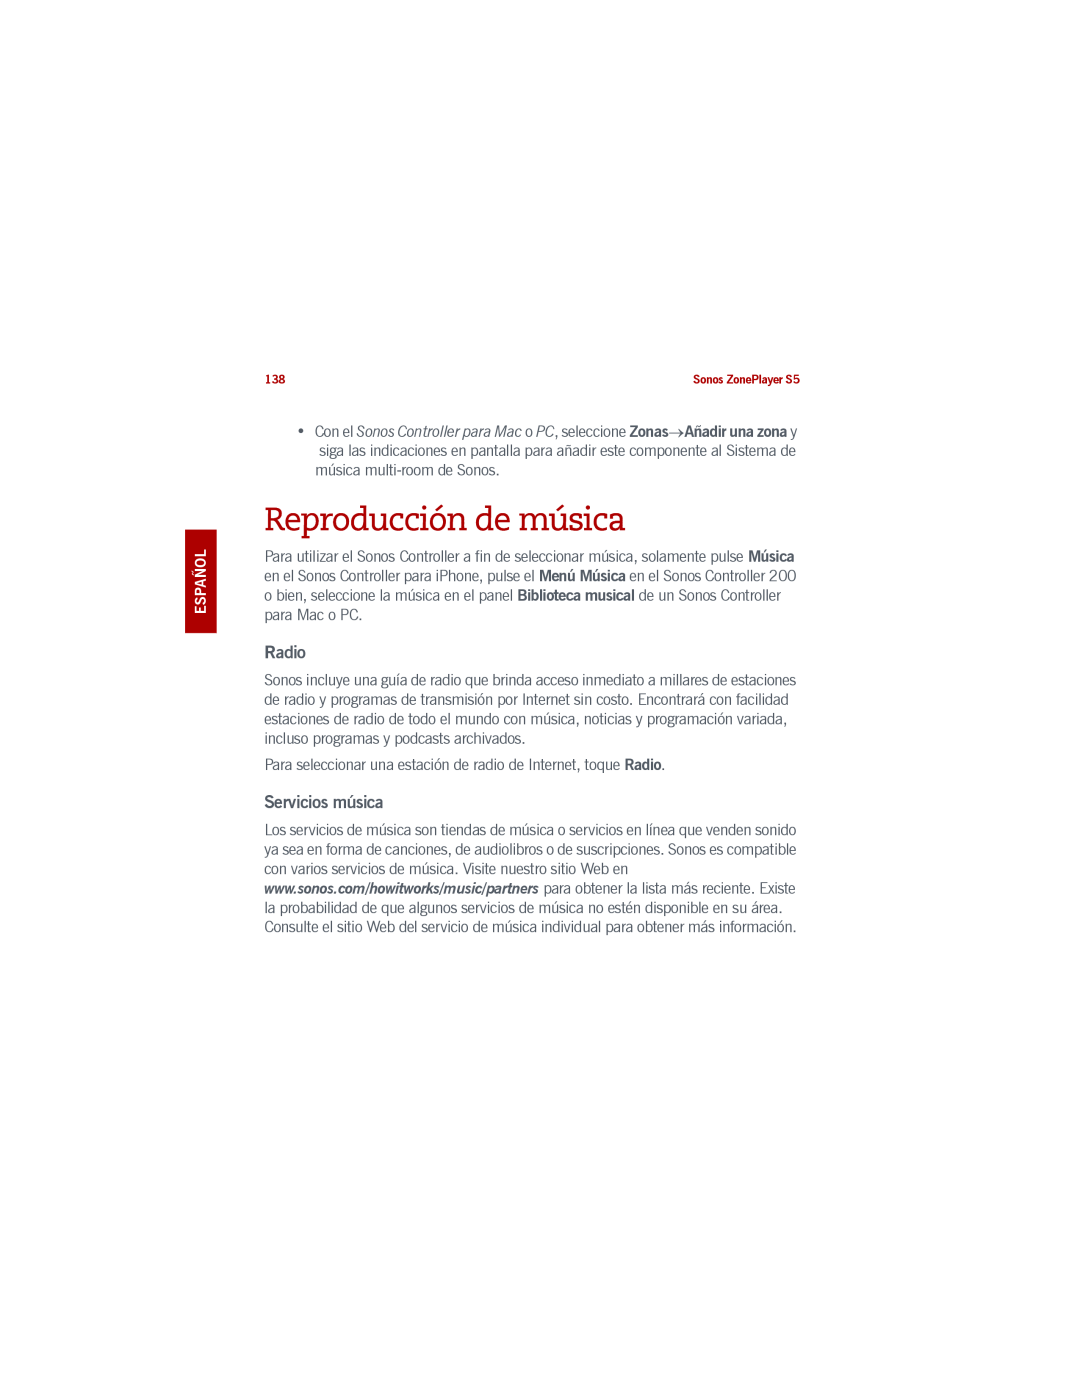 Sonos S5 manual Reproducción de música, Radio, Servicios música 